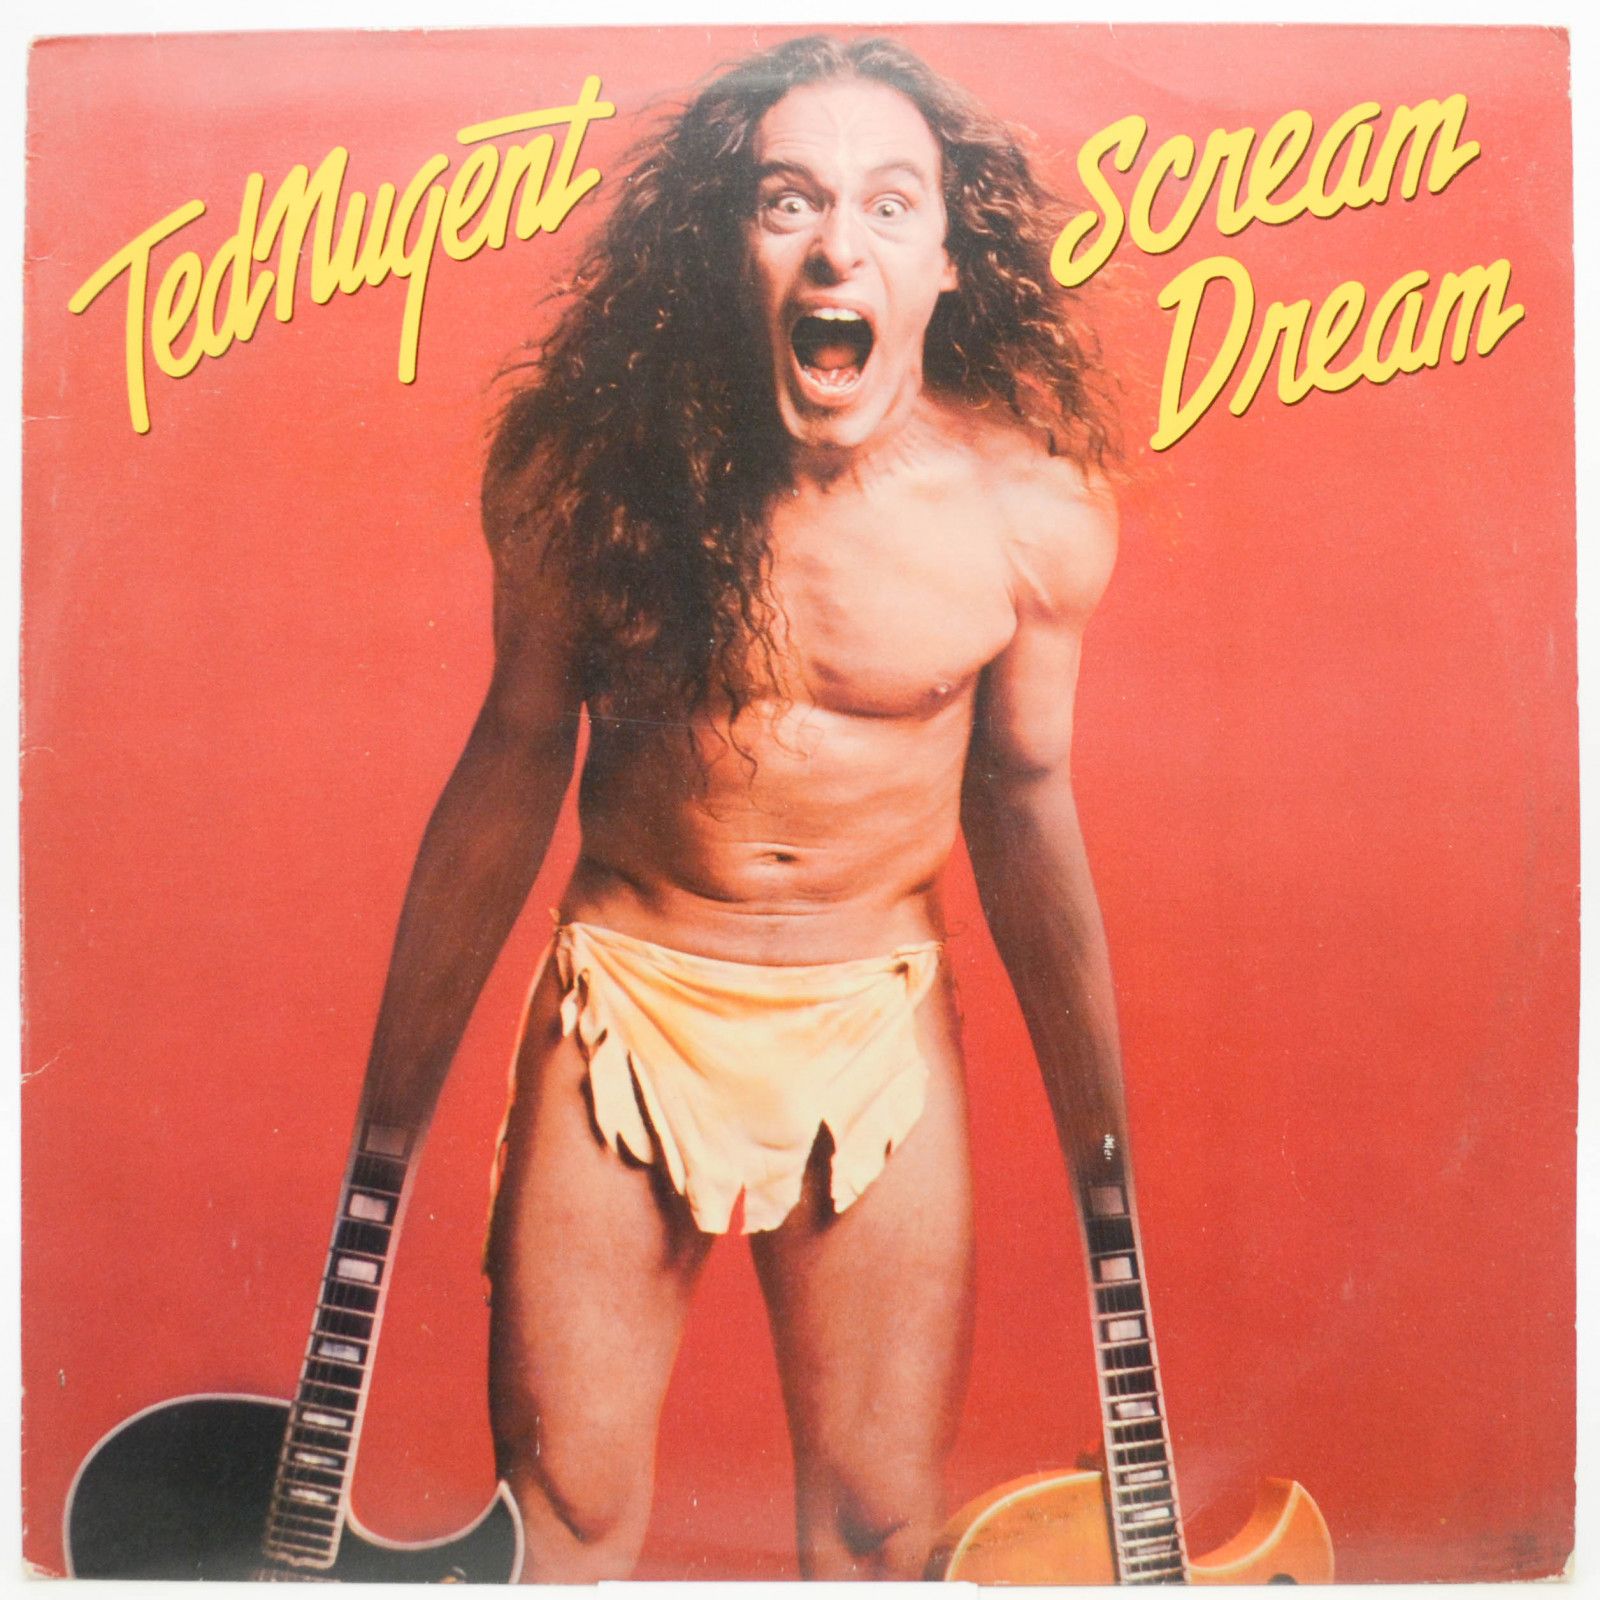 Ted Nugent — Scream Dream, 1980